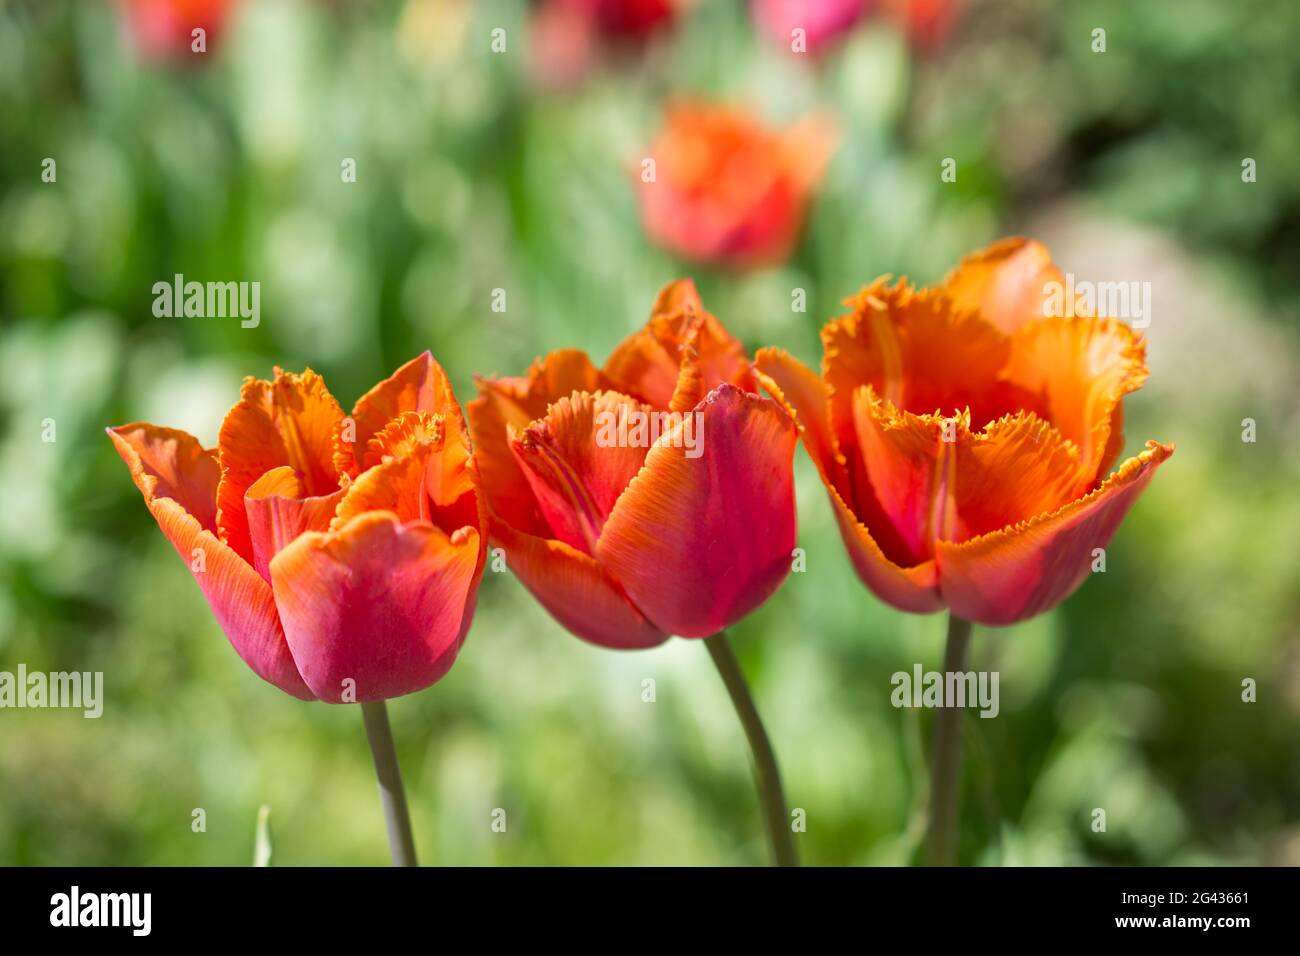 Tulipes fraîches de couleur orange Banque D'Images